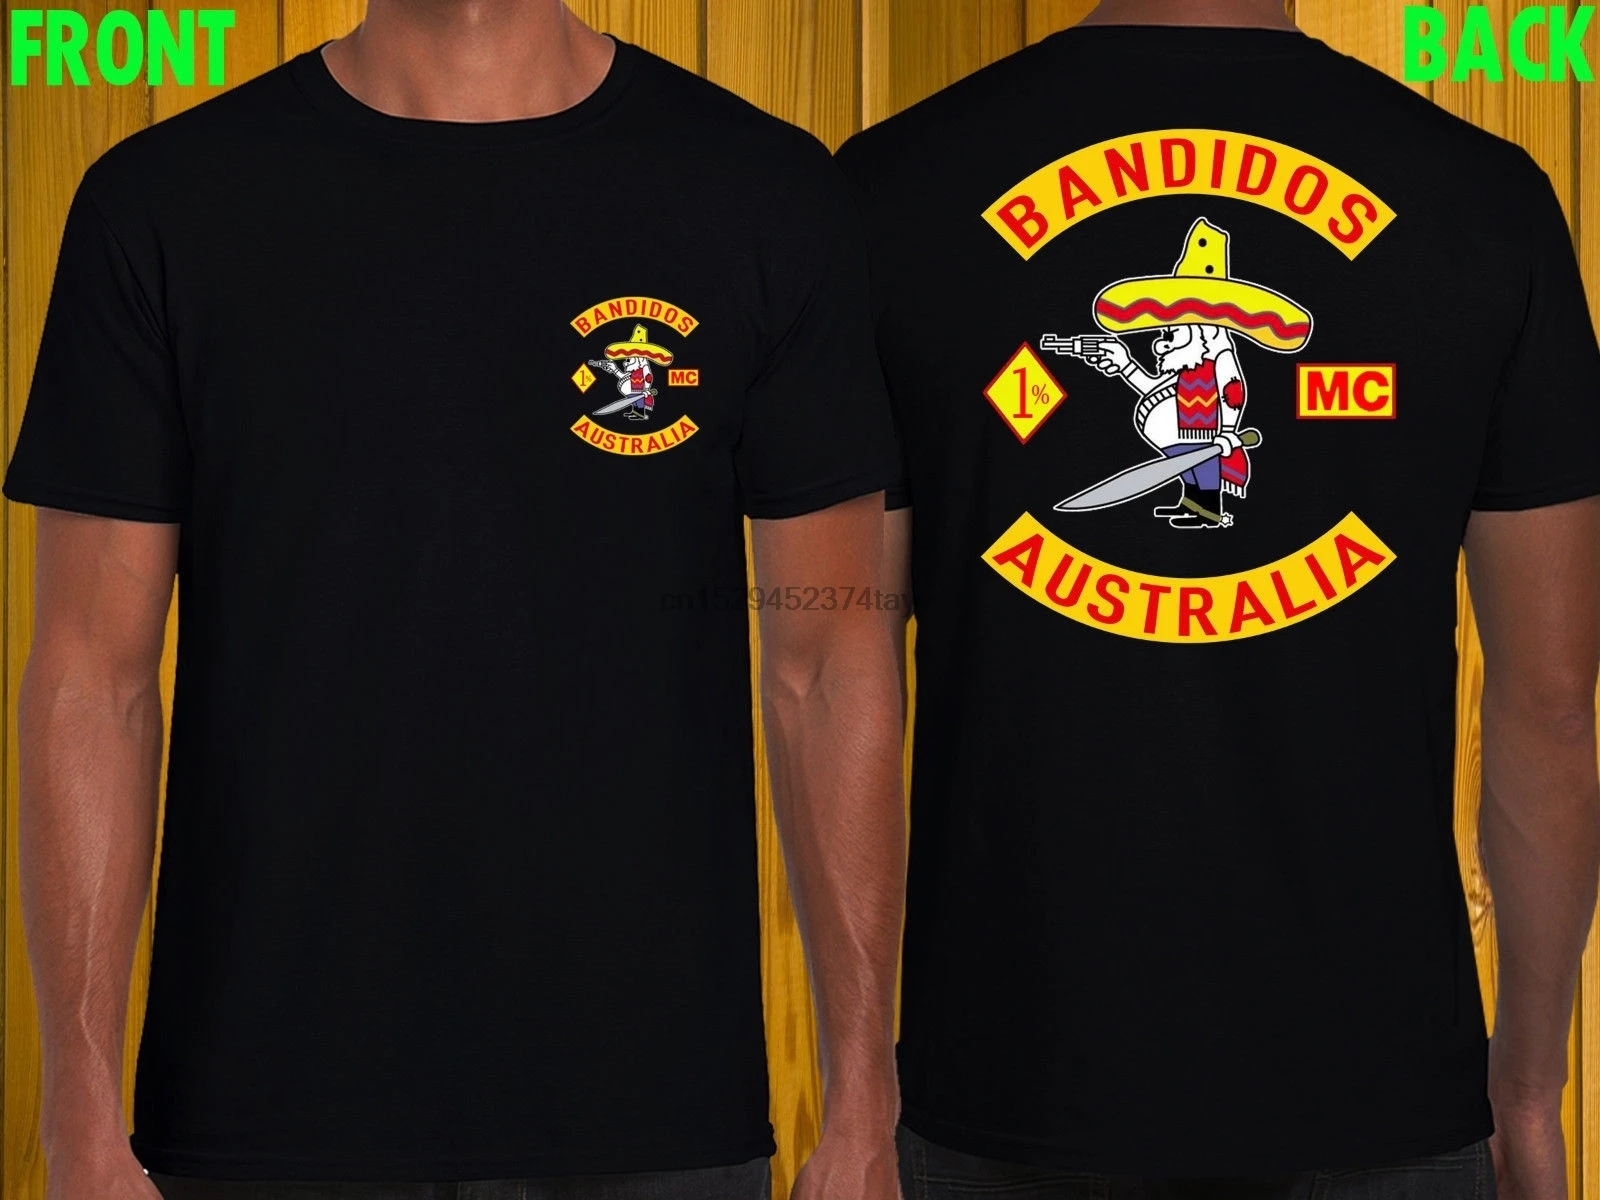 Camiseta negra bandados Australia MC